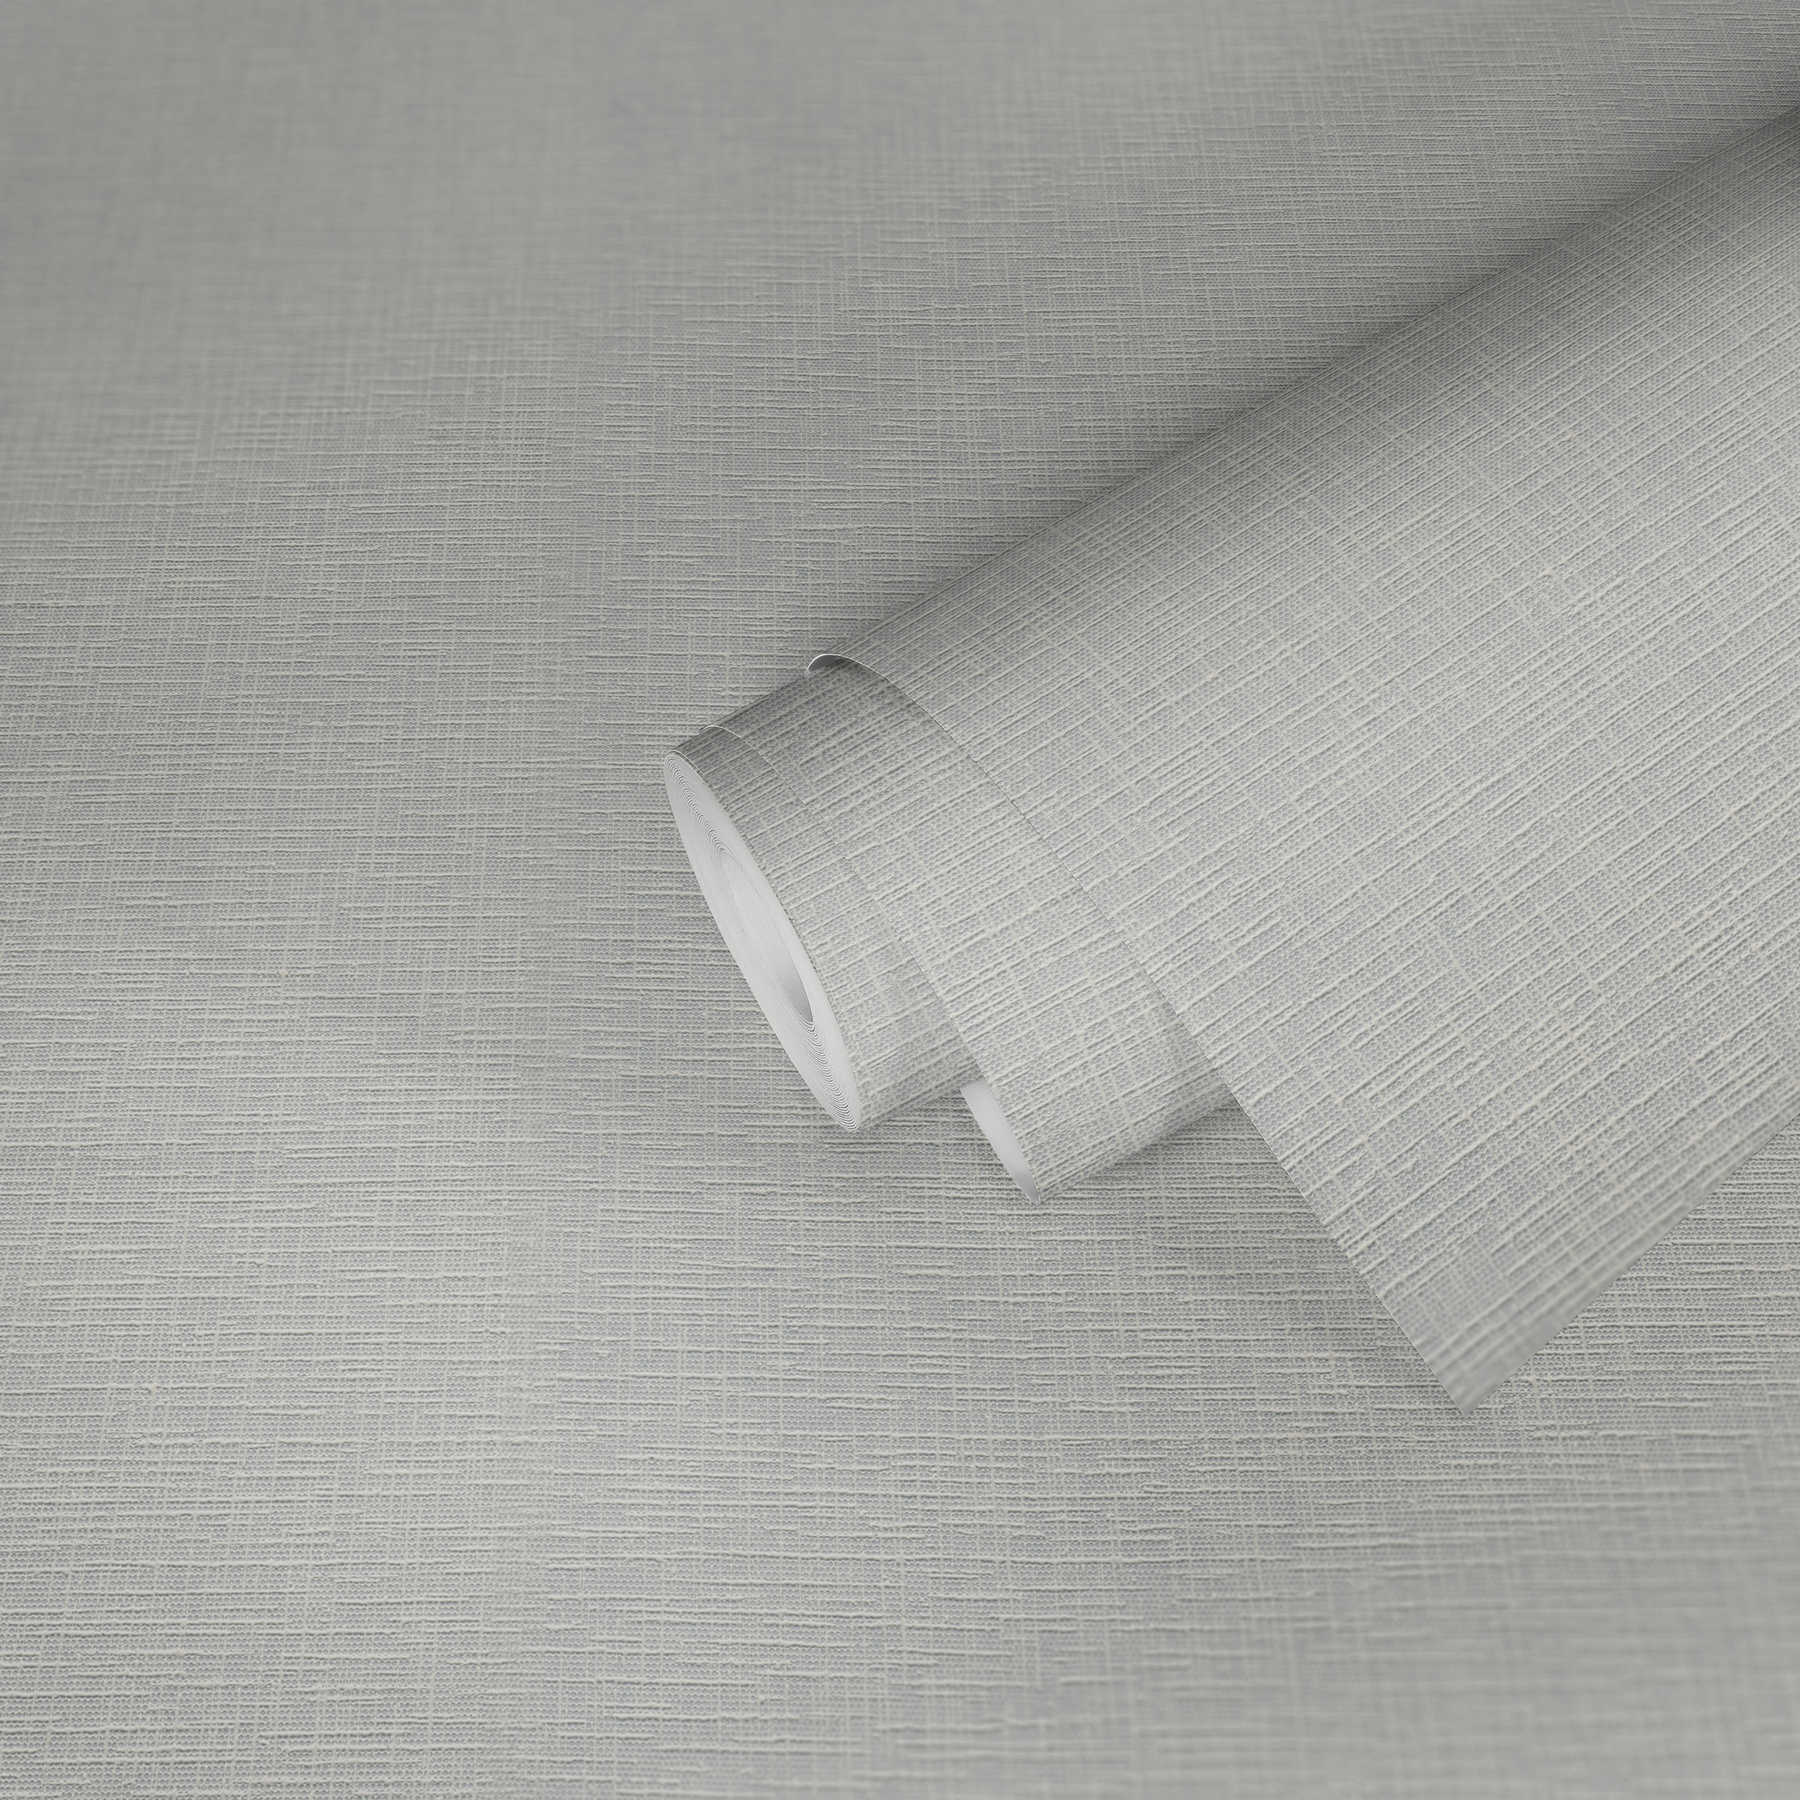             Tapete mit Struktureffekt in Textiloptik – Weiß
        